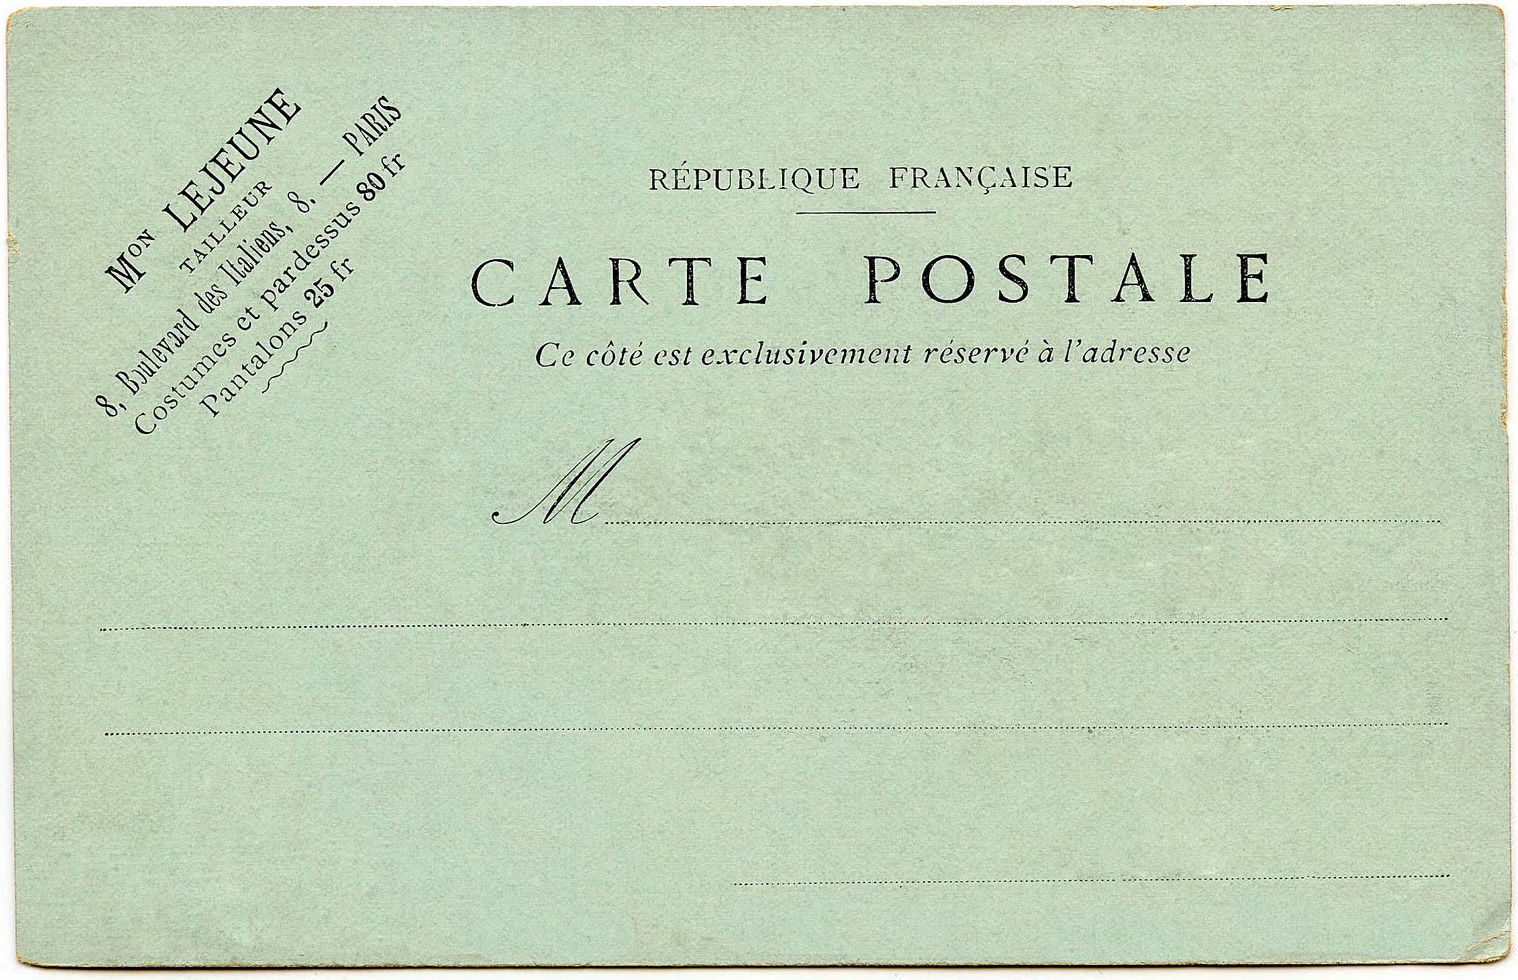 vintage mail image - carte postale | After Dark Dispatch